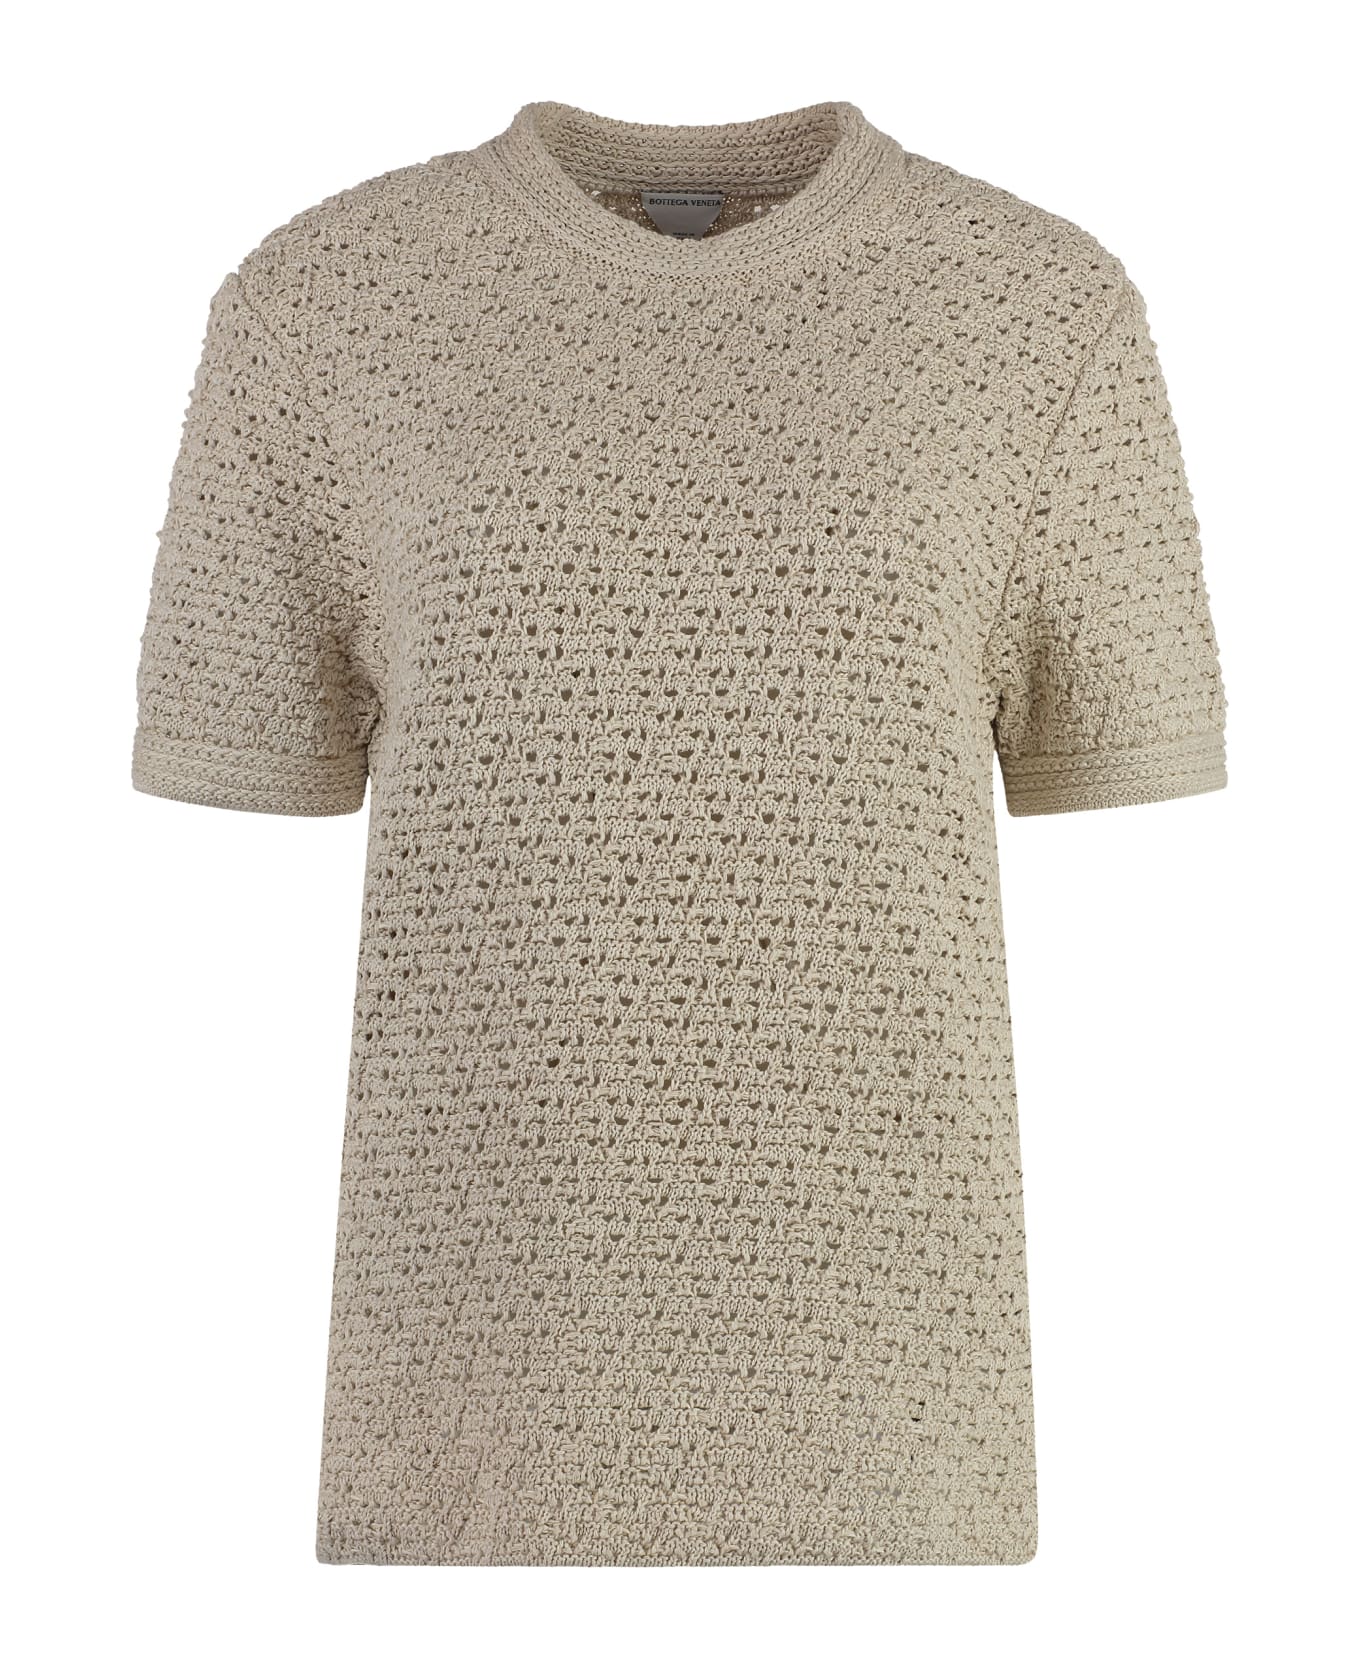 Bottega Veneta Knitted T-shirt - Beige Tシャツ